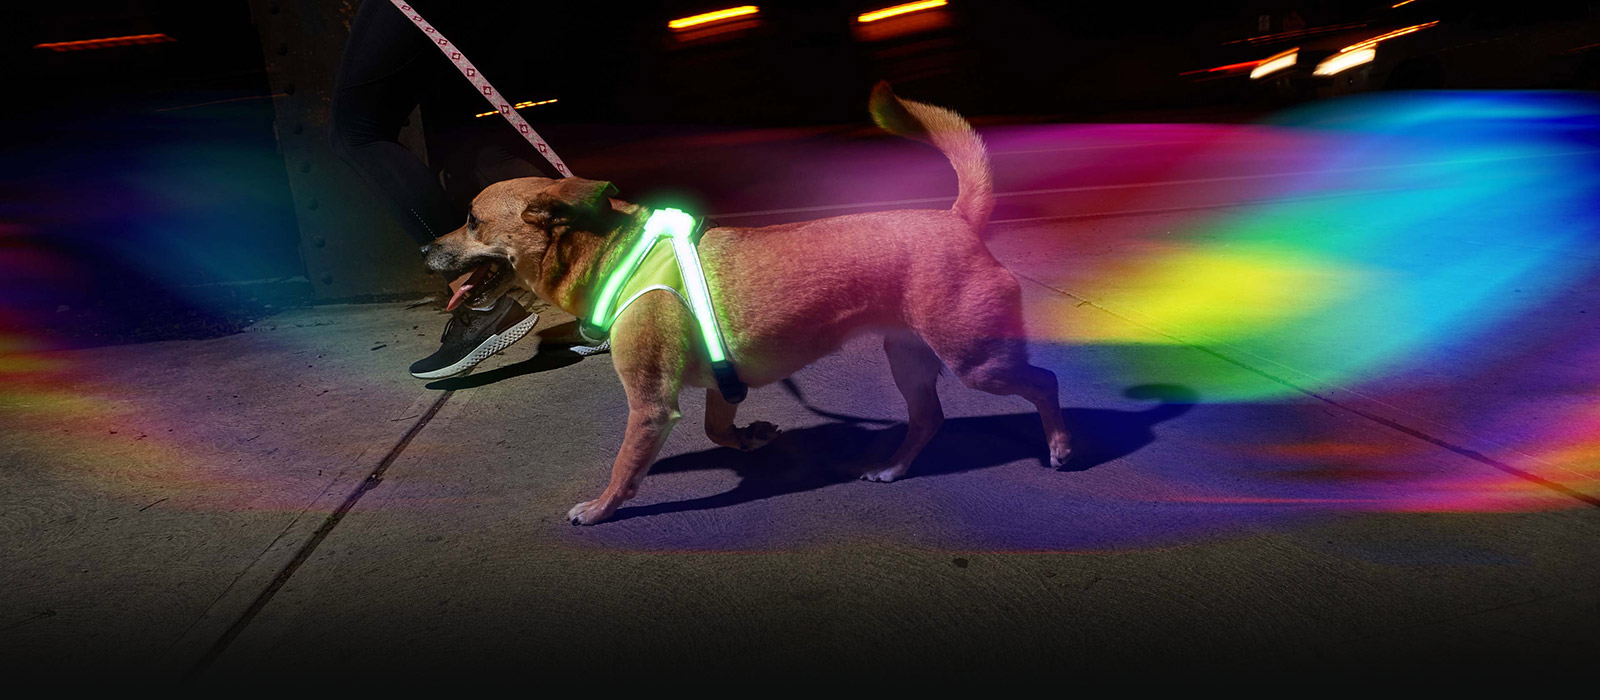 Hund mit Lighthound beim Spazieren